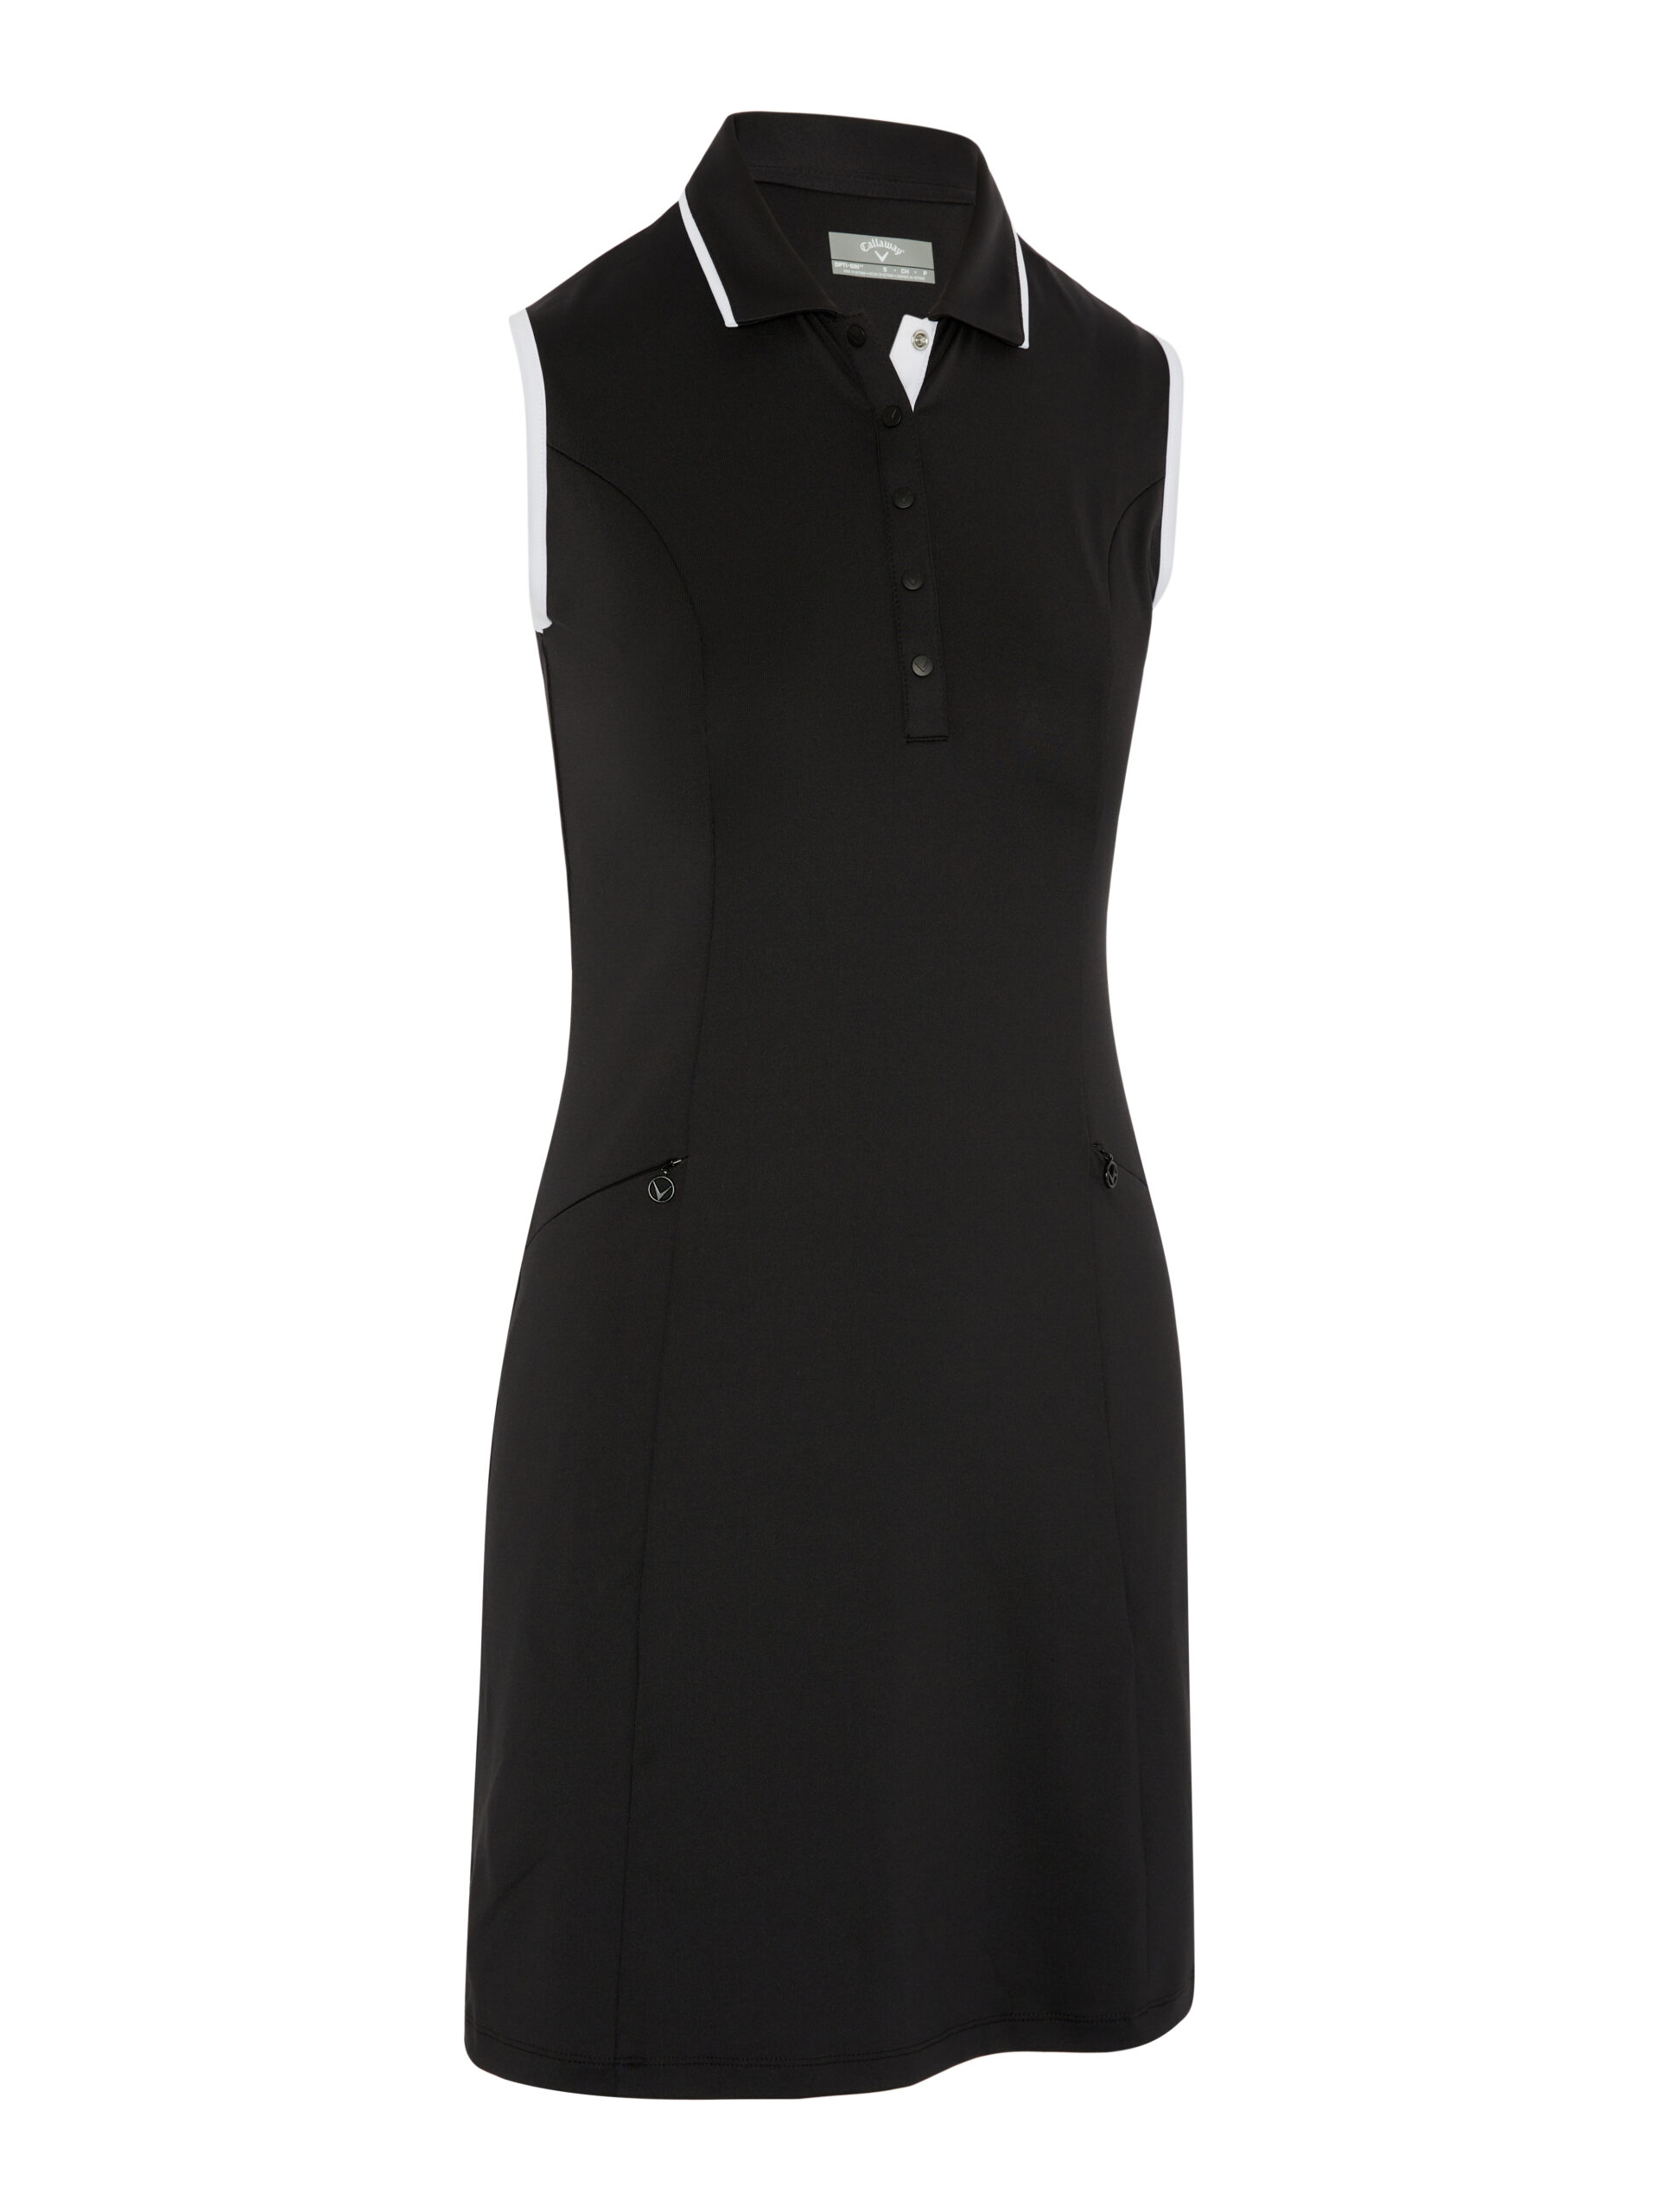 Callaway dámské golfové šaty, černé, vel. L